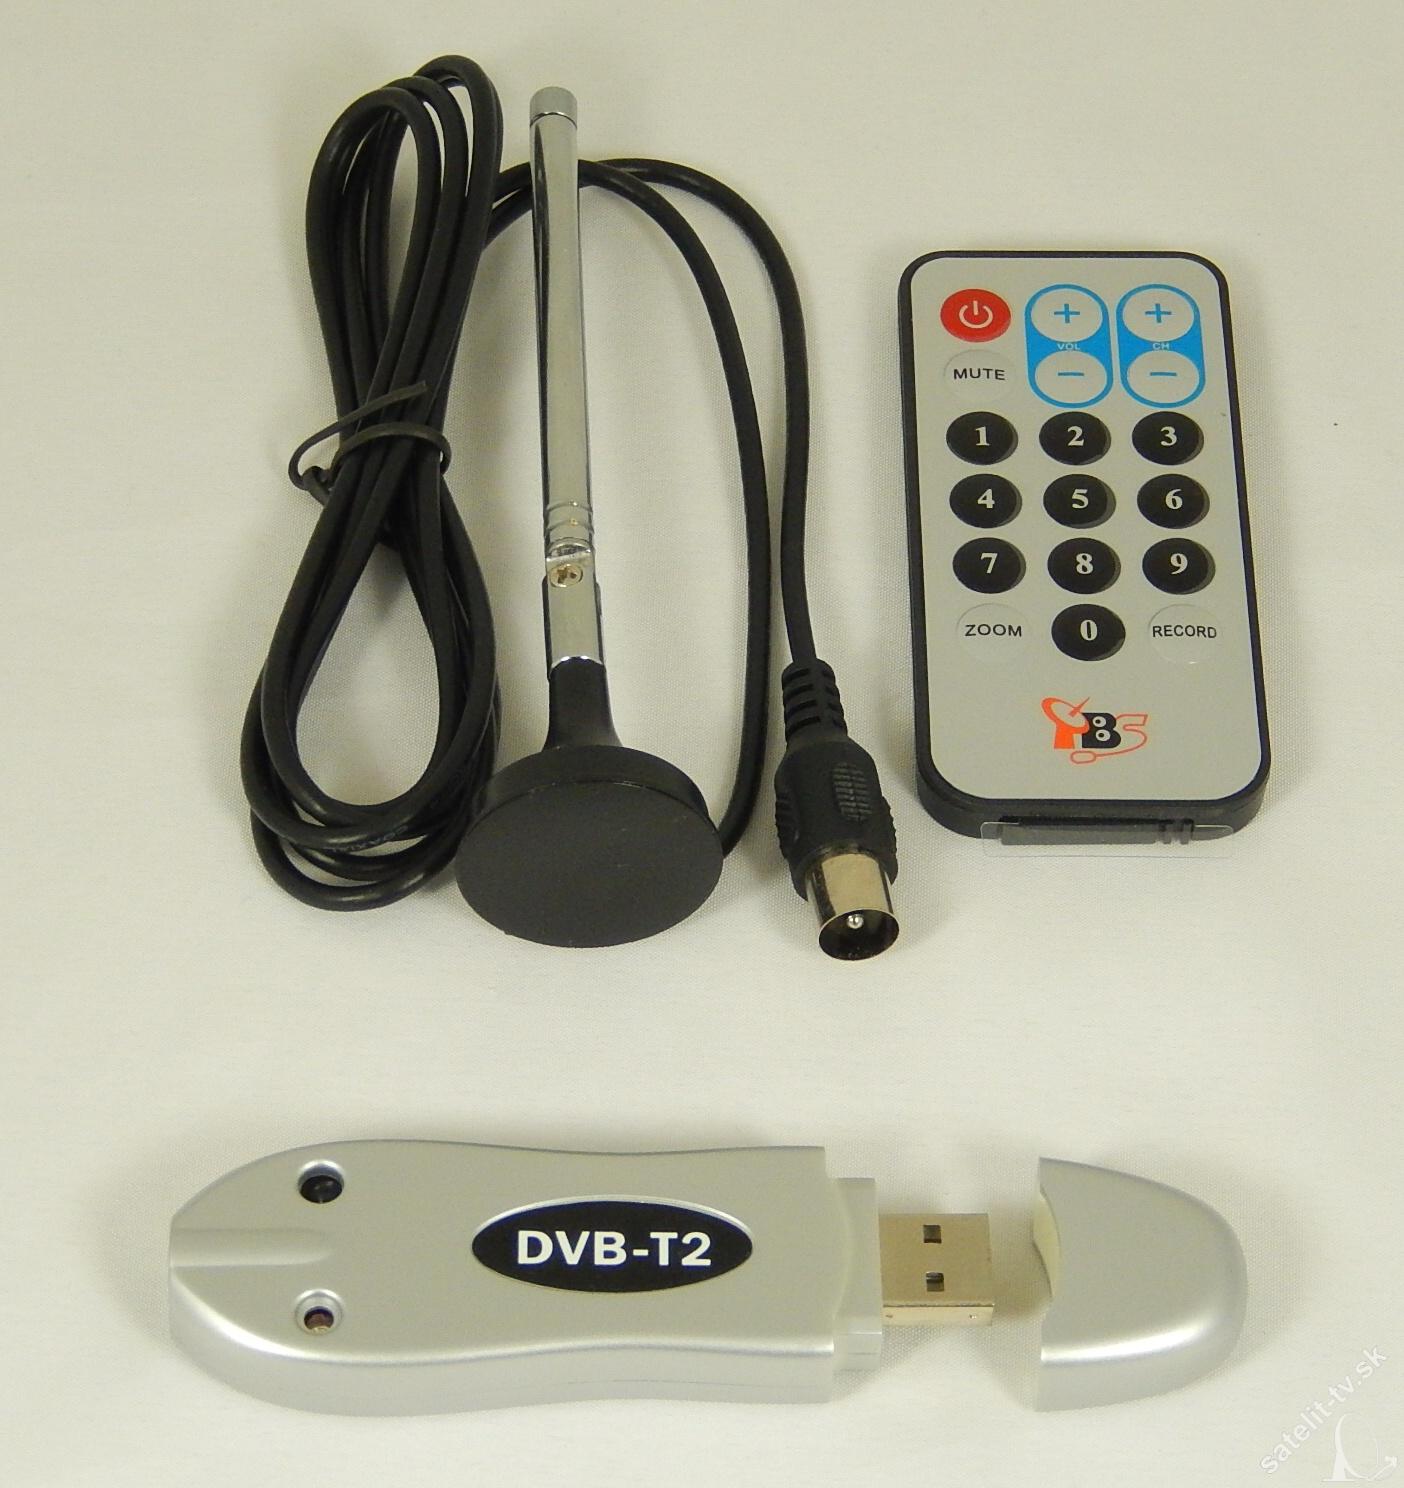 TBS 5220 USB DVB-T2 / T / C Tuner TV Stick